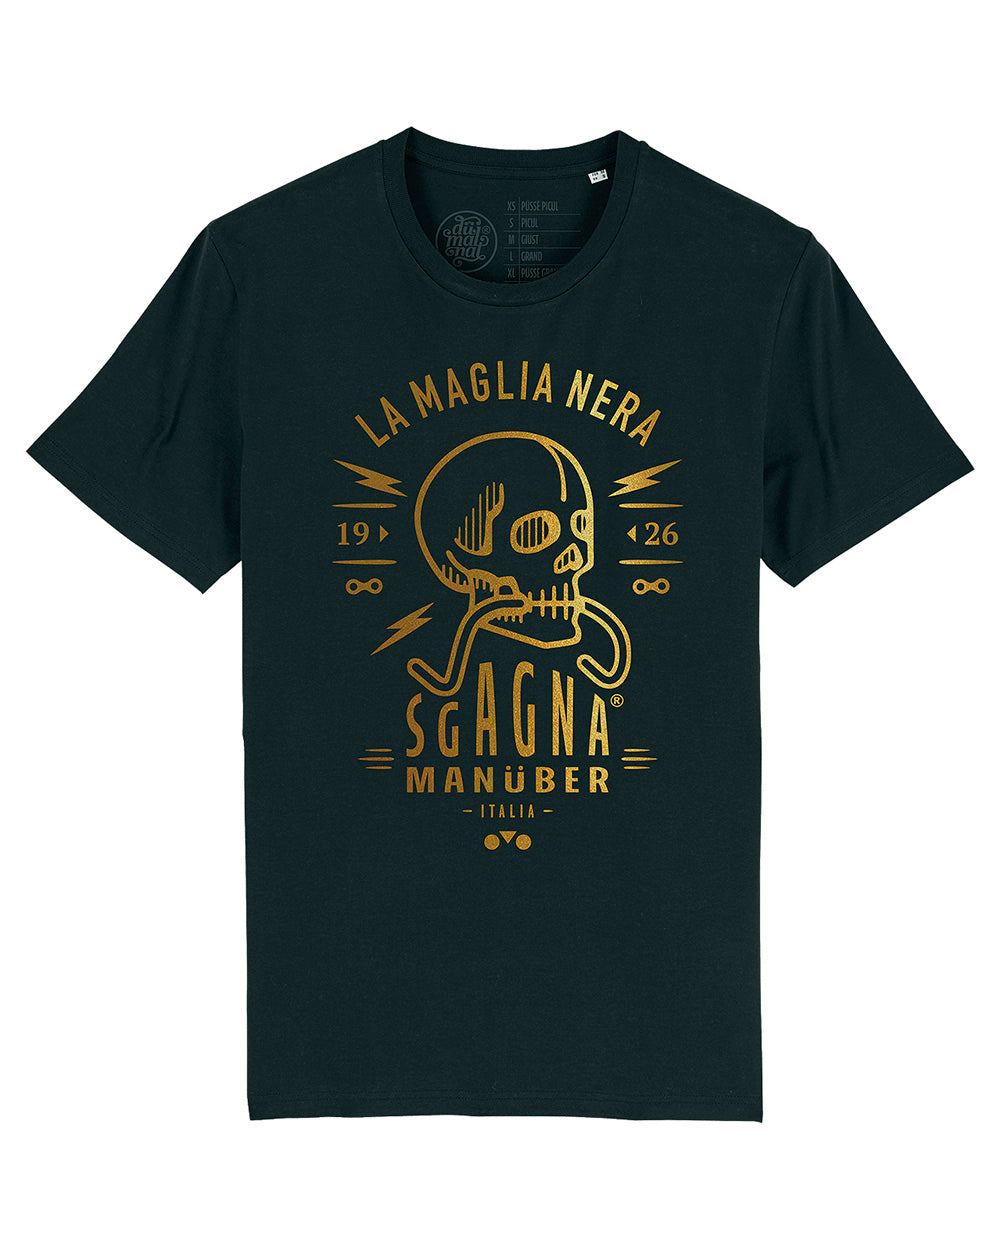 t-shirt "Sgagnamanüber" mod. La Maglia Nera